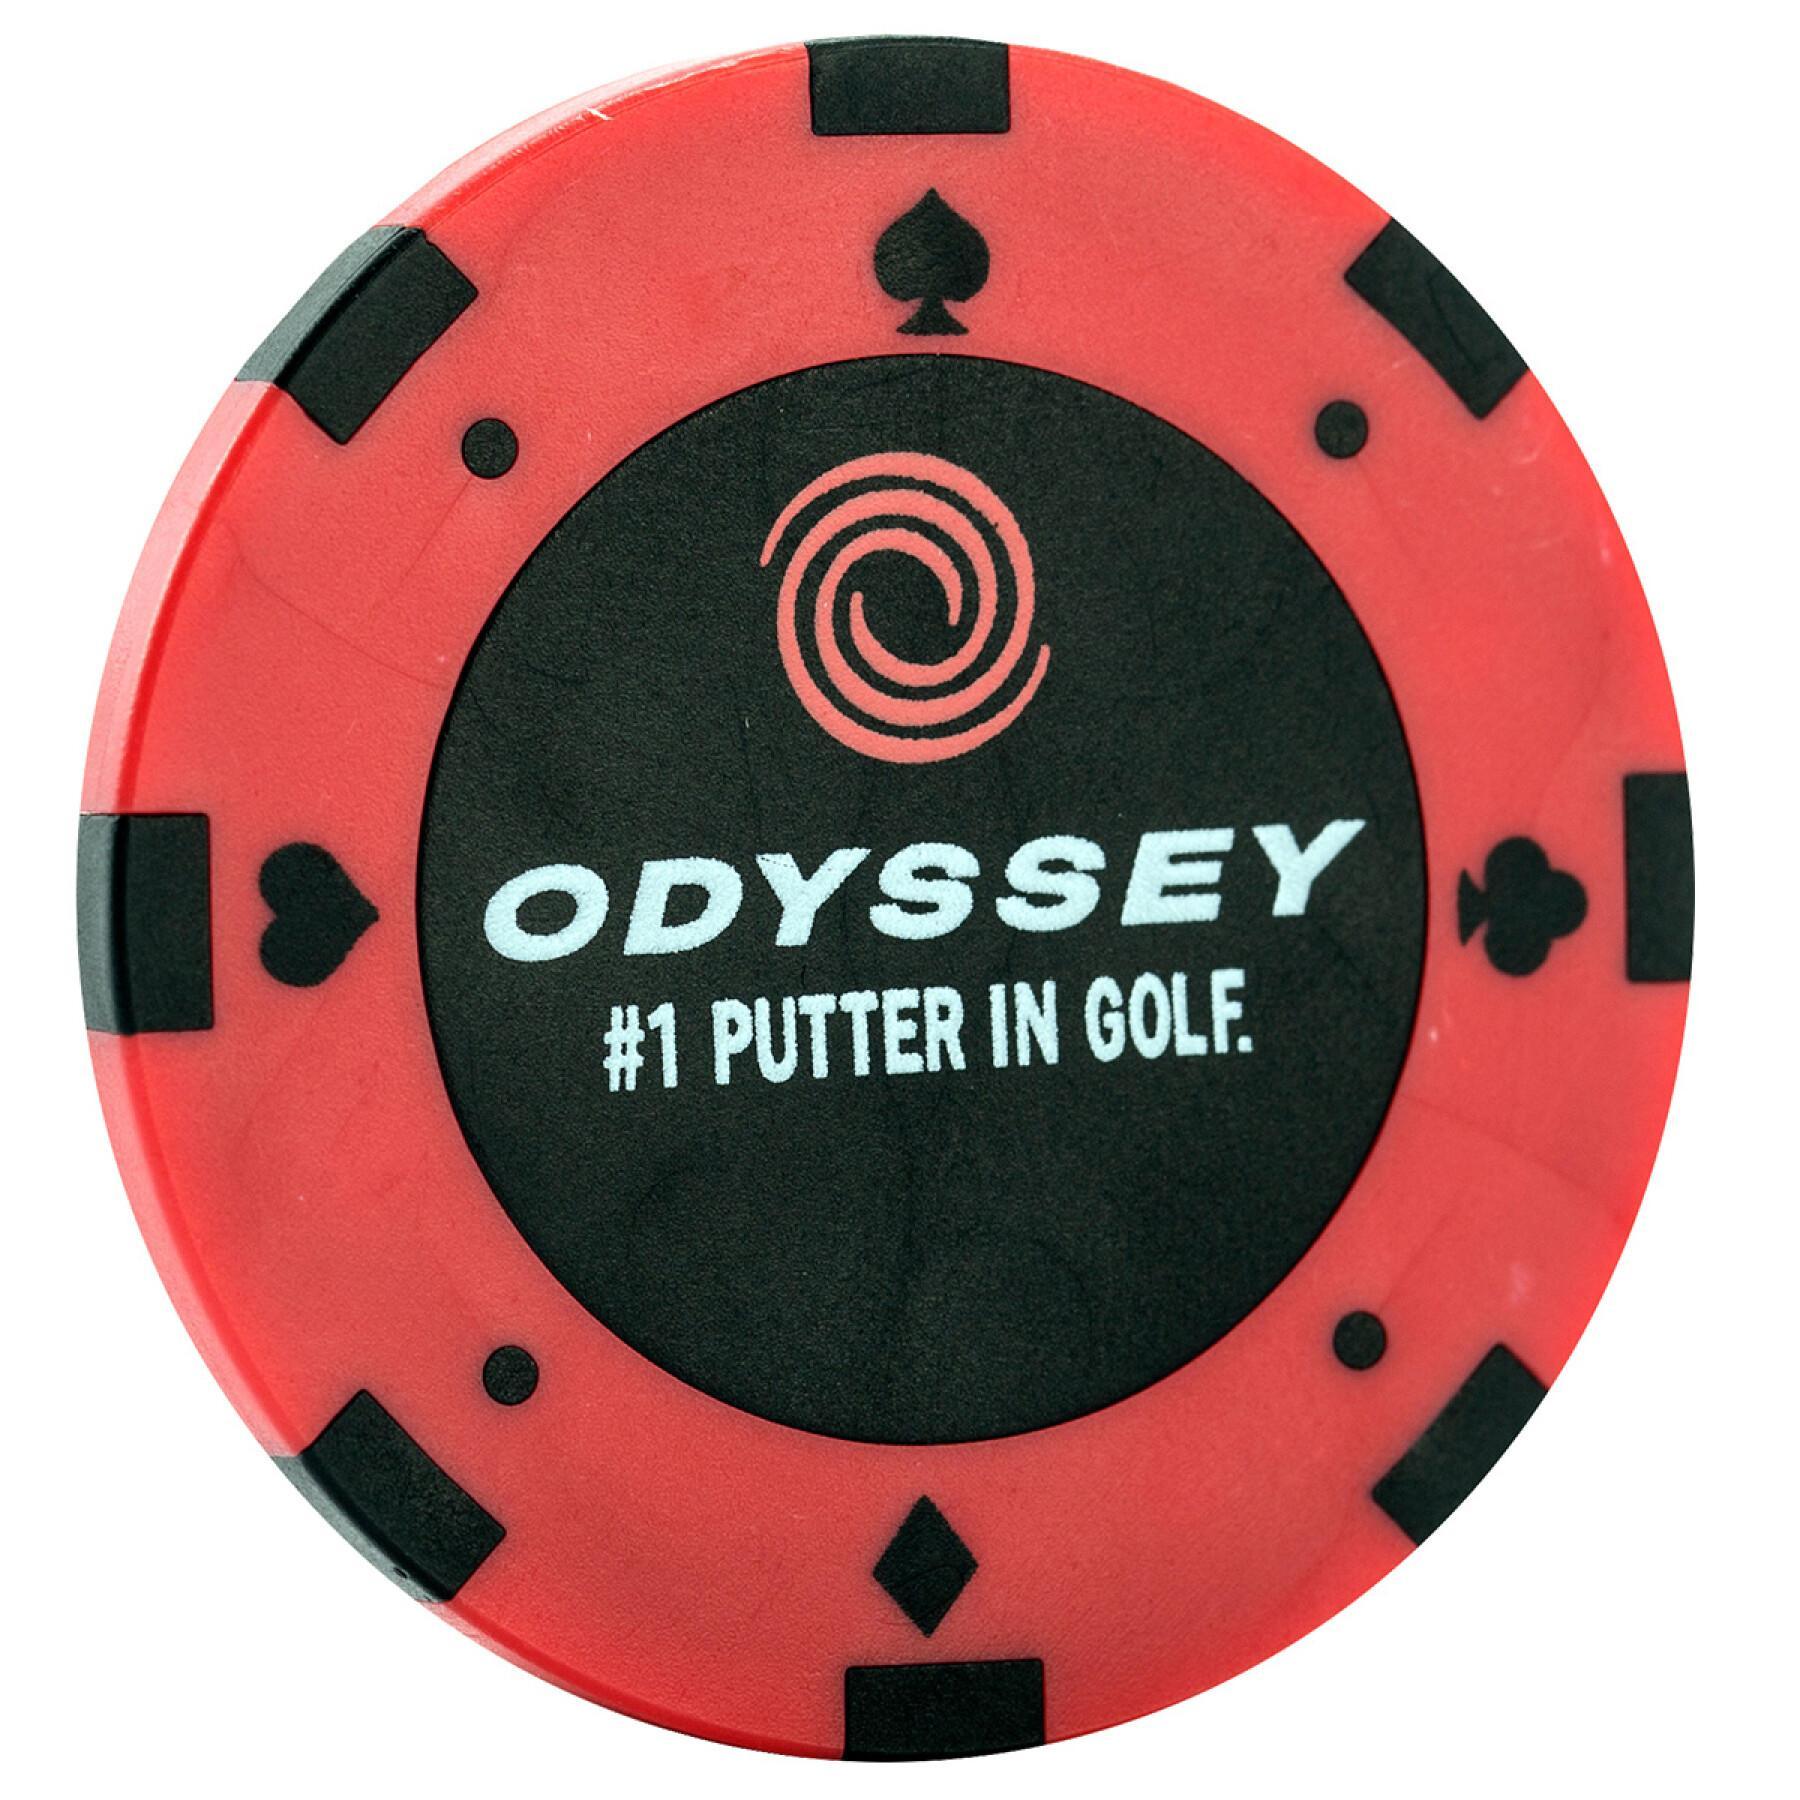 Markery do piłek golfowych Callaway odyssey poker chip